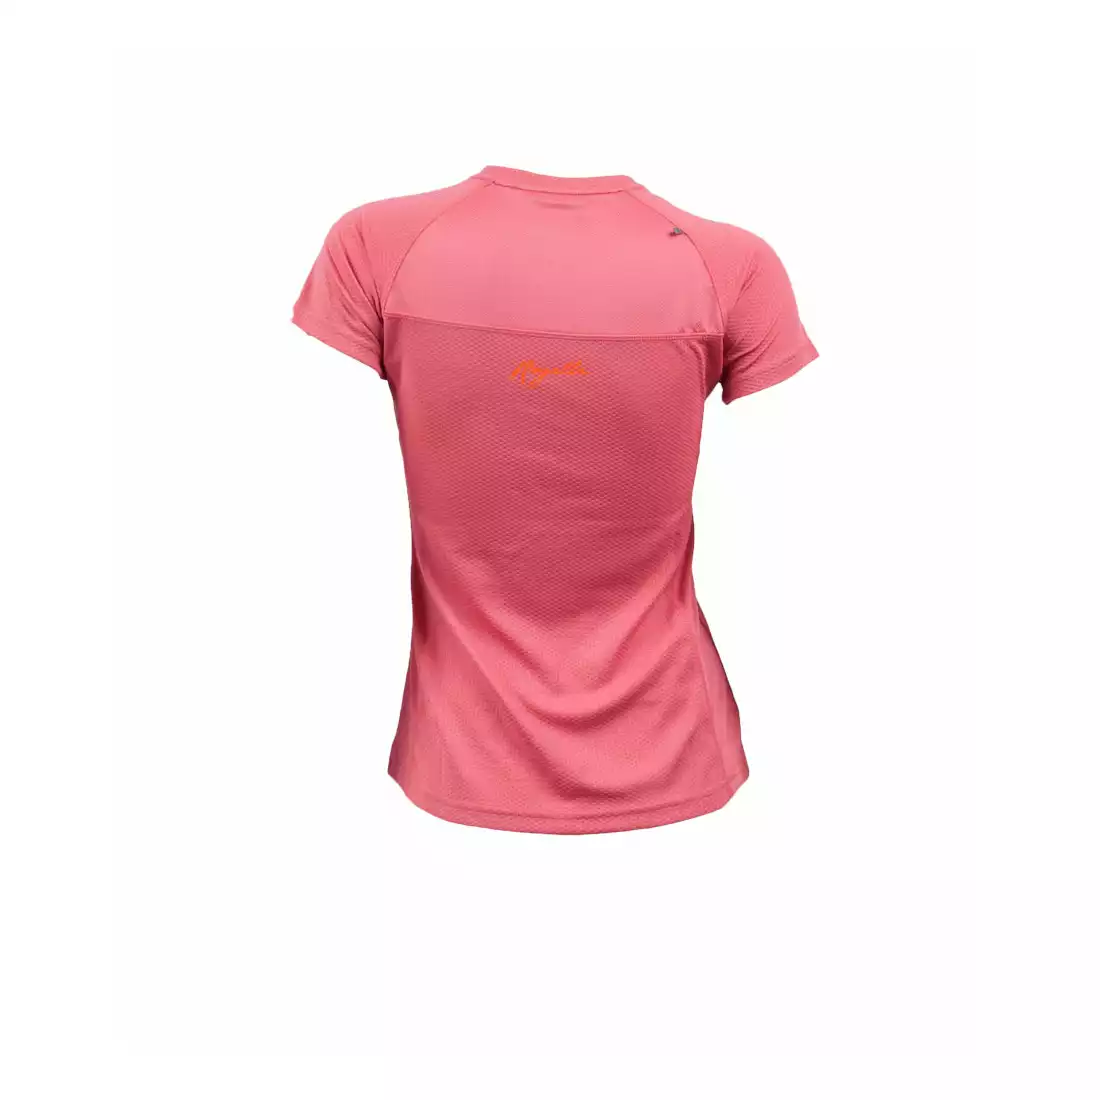 ROGELLI RUN SIRA - damska koszulka do biegania - kolor: Ciemny róż